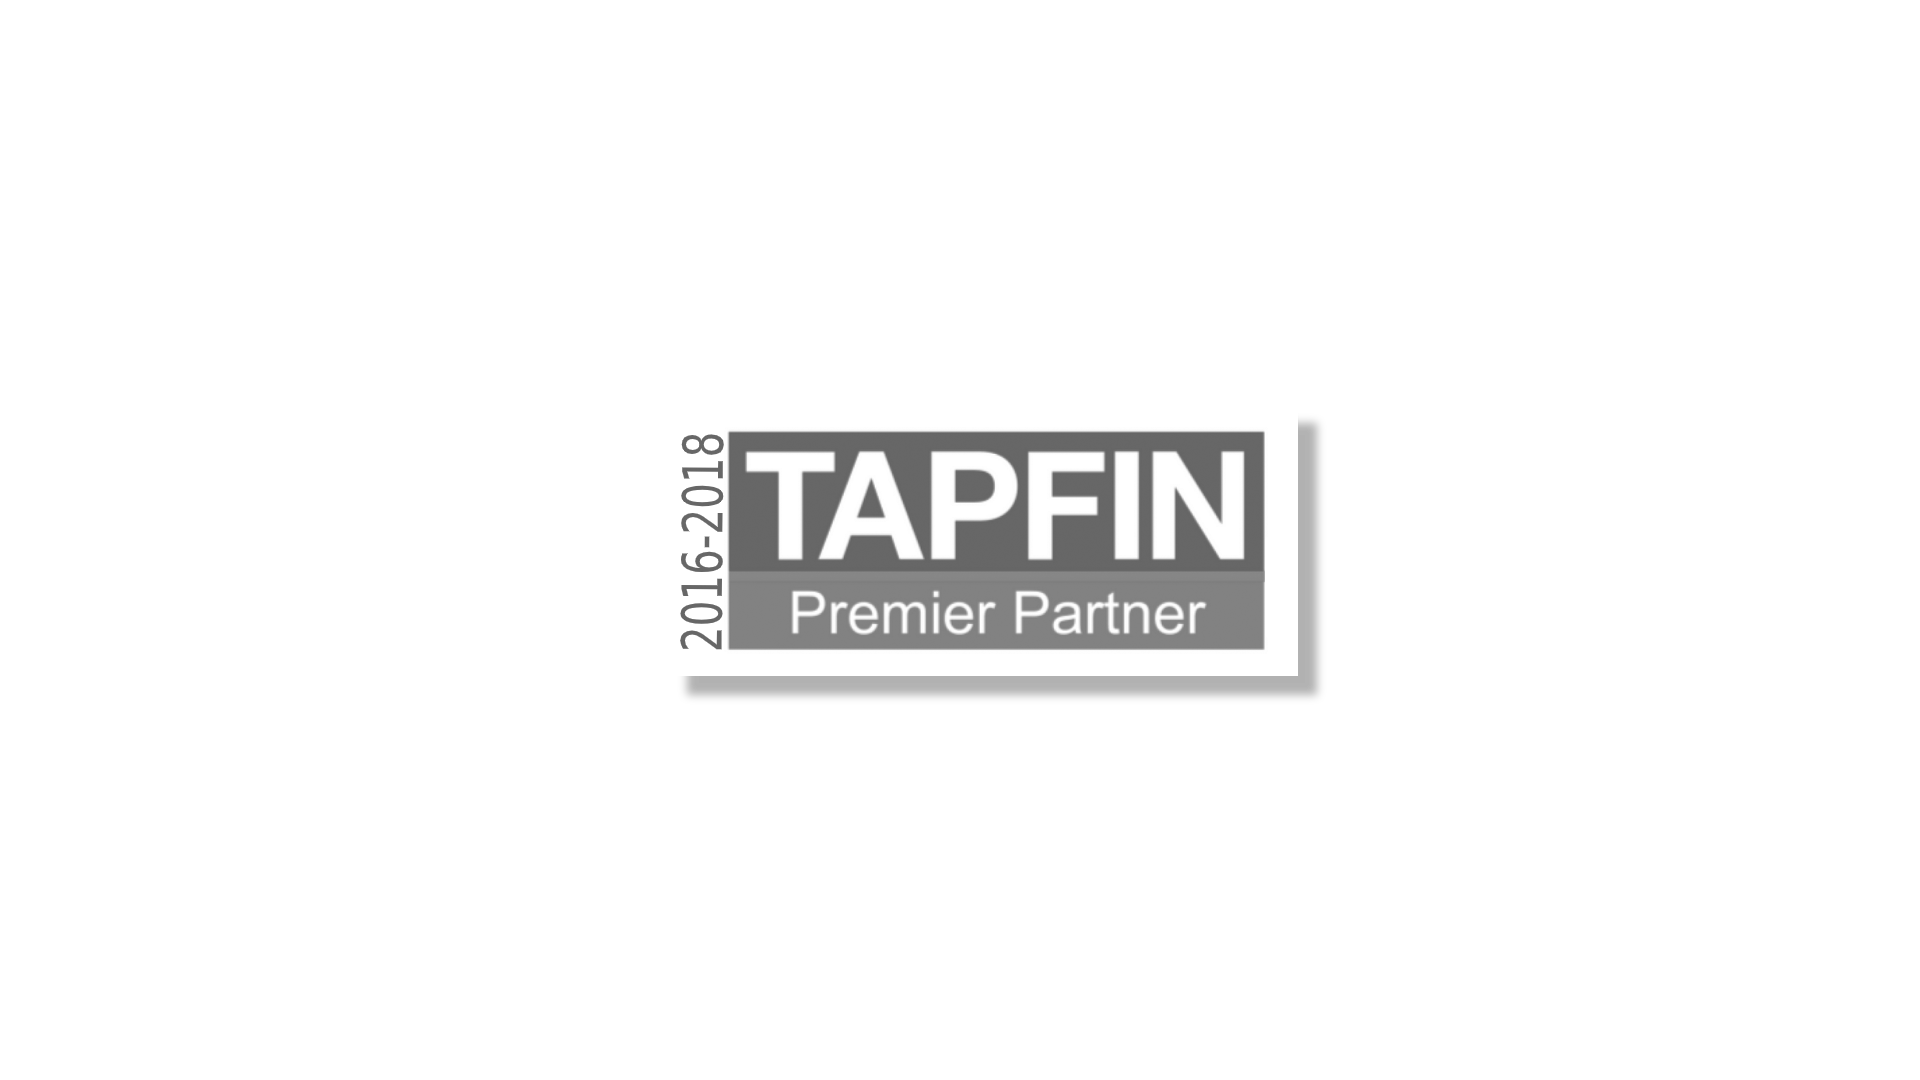 Copy of TAPFIN 2016 2018